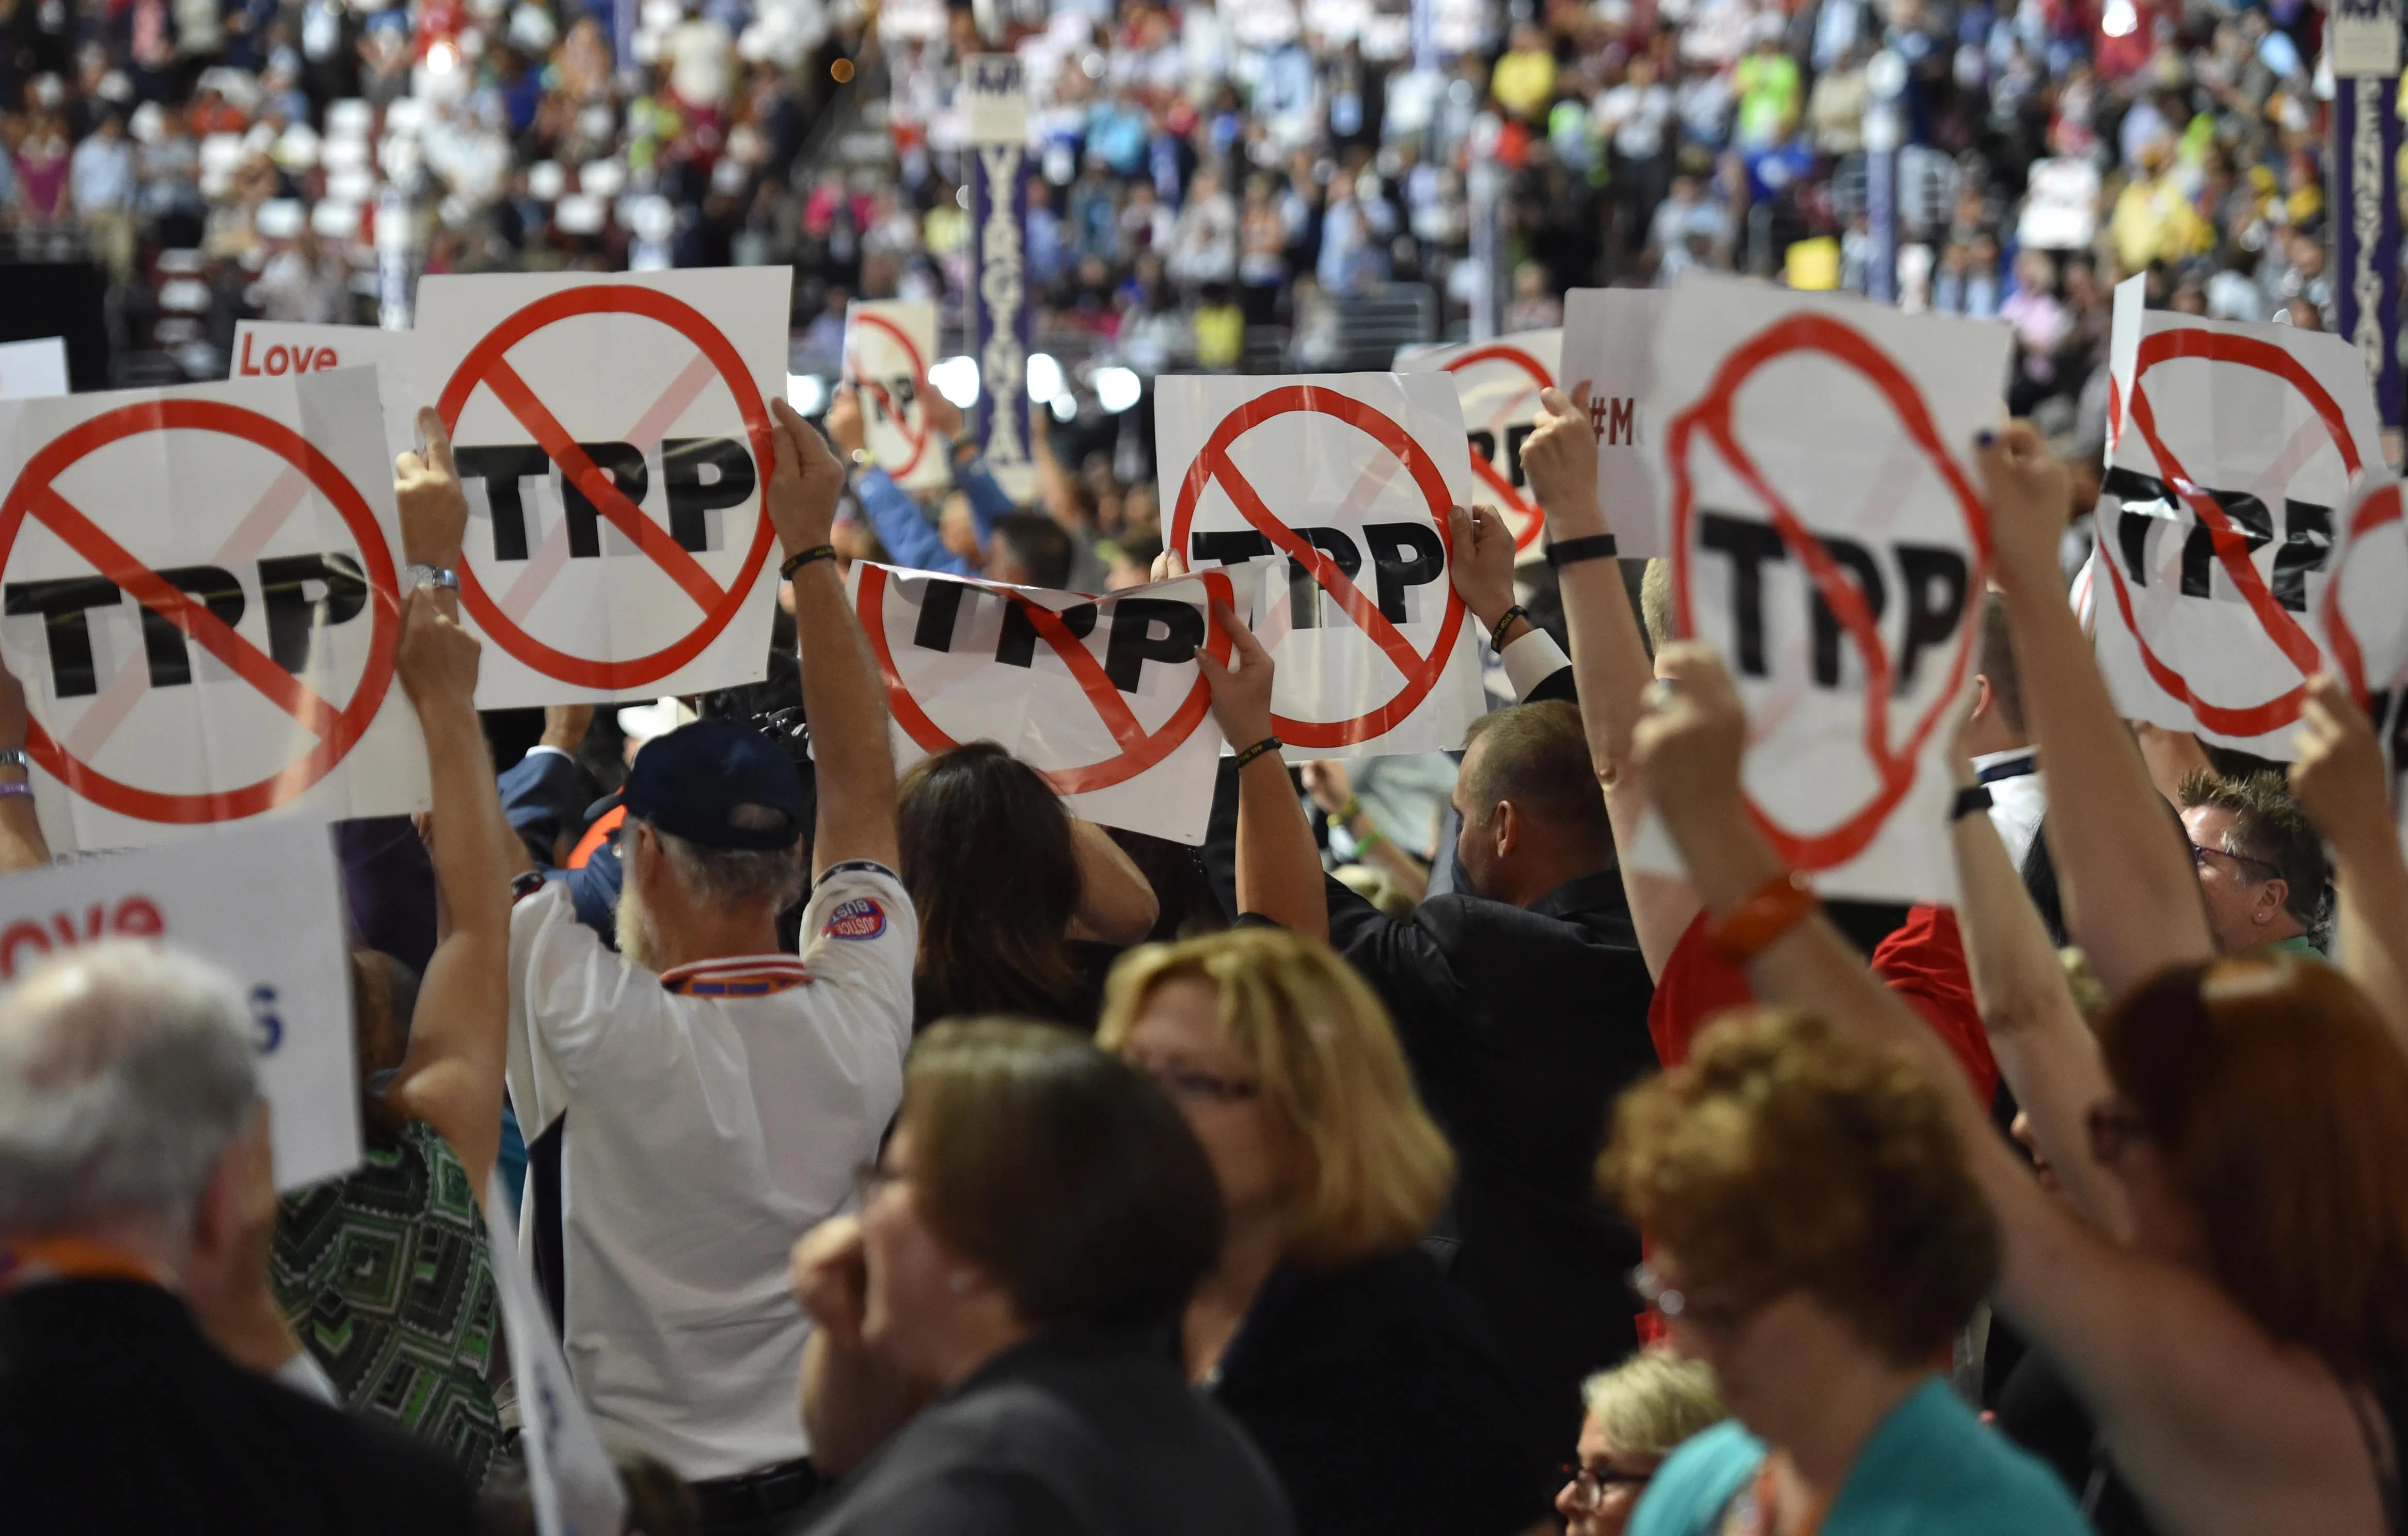 La audiencia levanta carteles con el nombre “Trump” tachada (AFP)